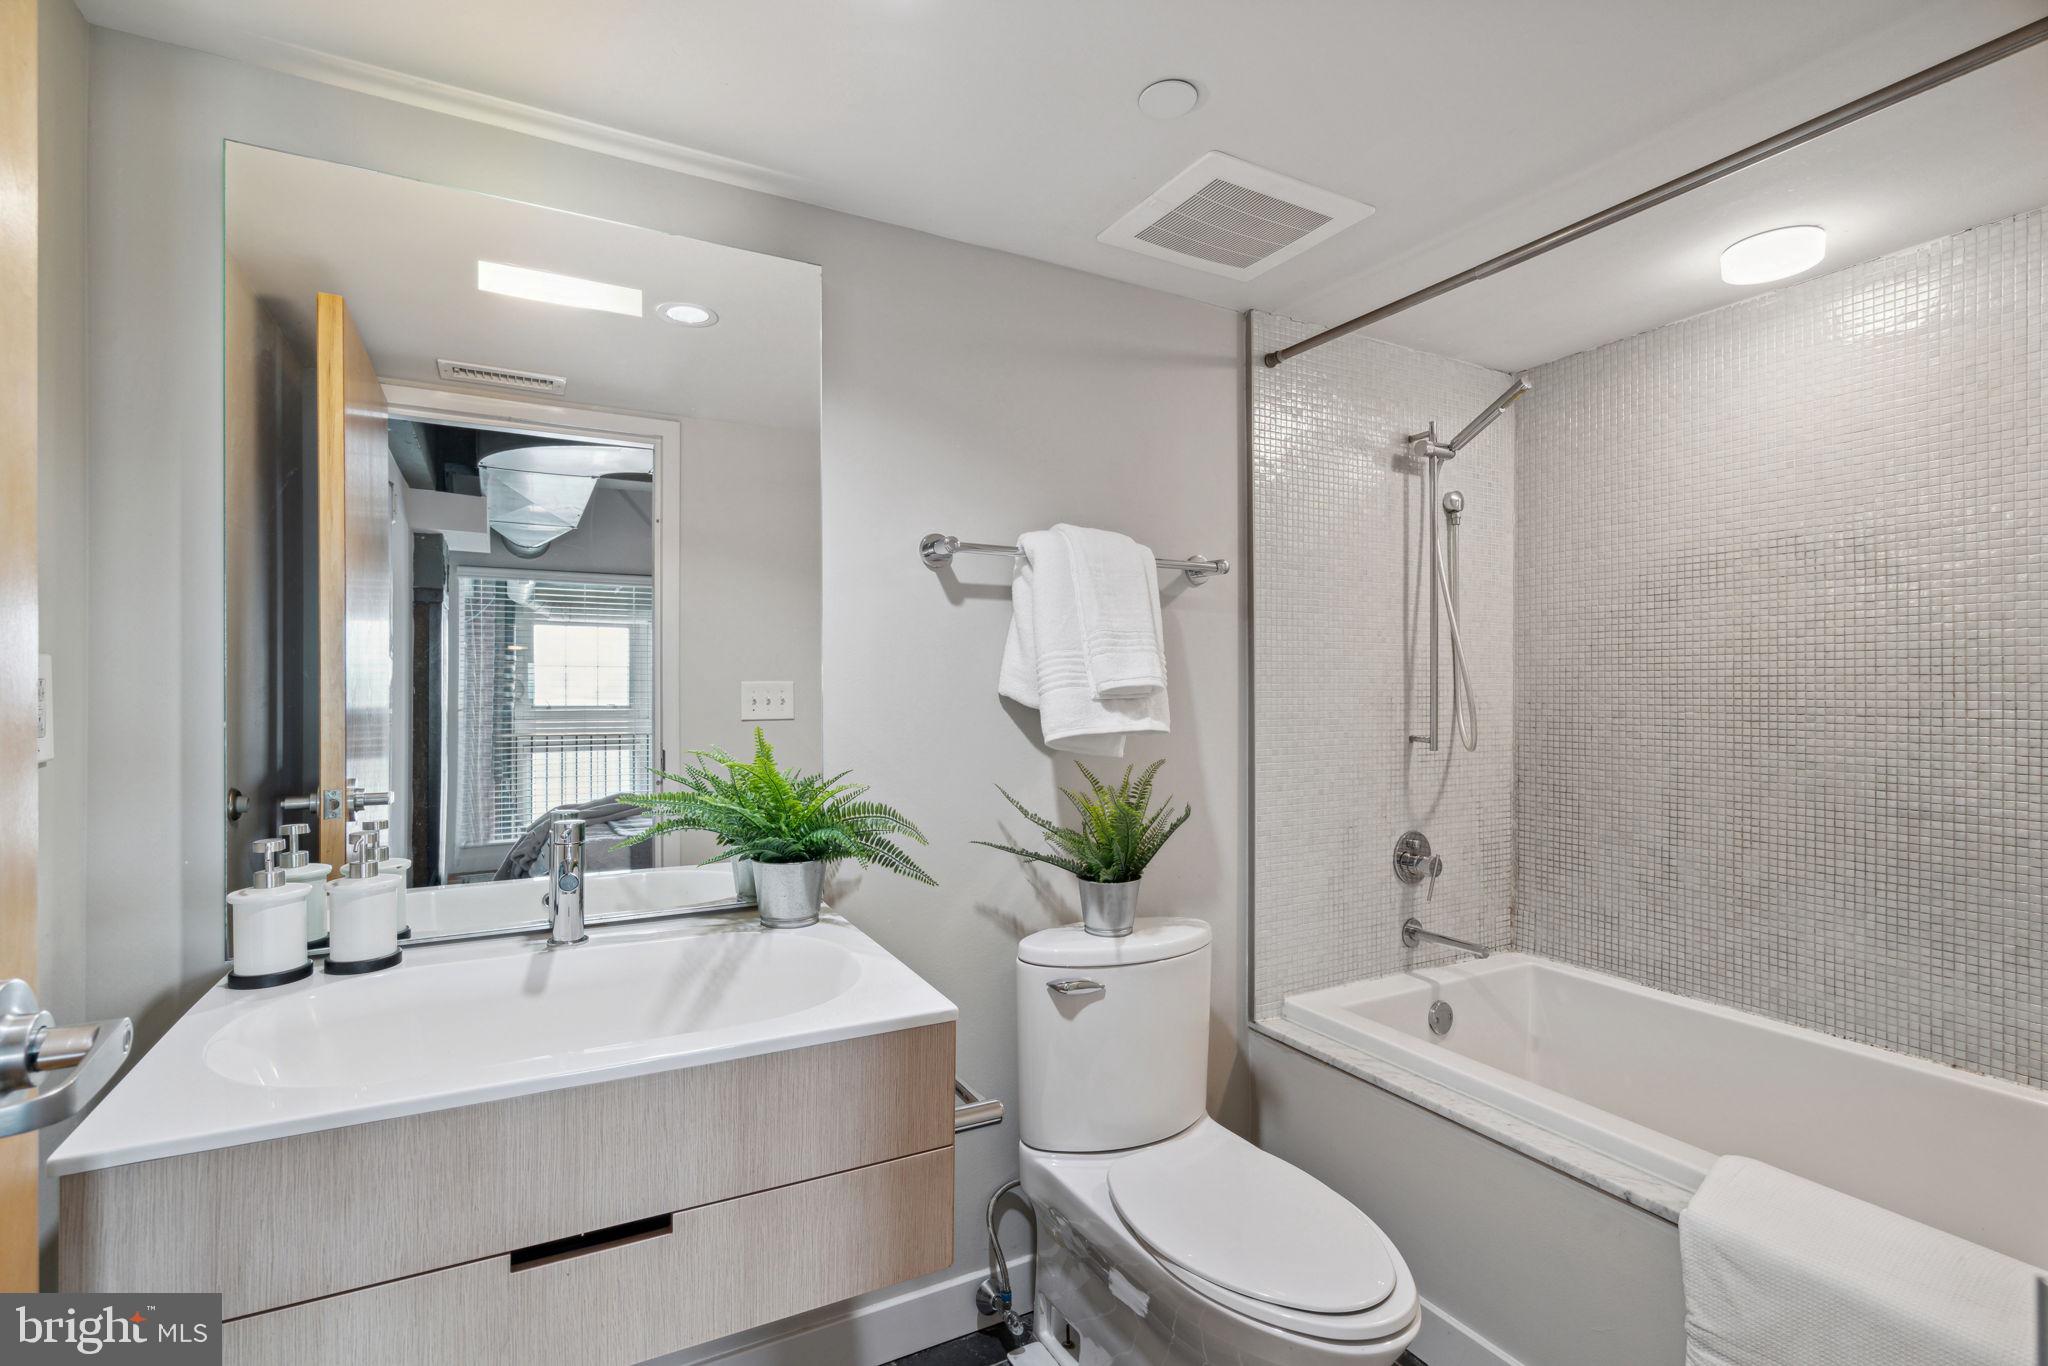 a bathroom with a white bath tub a mirror a toilet and a sink